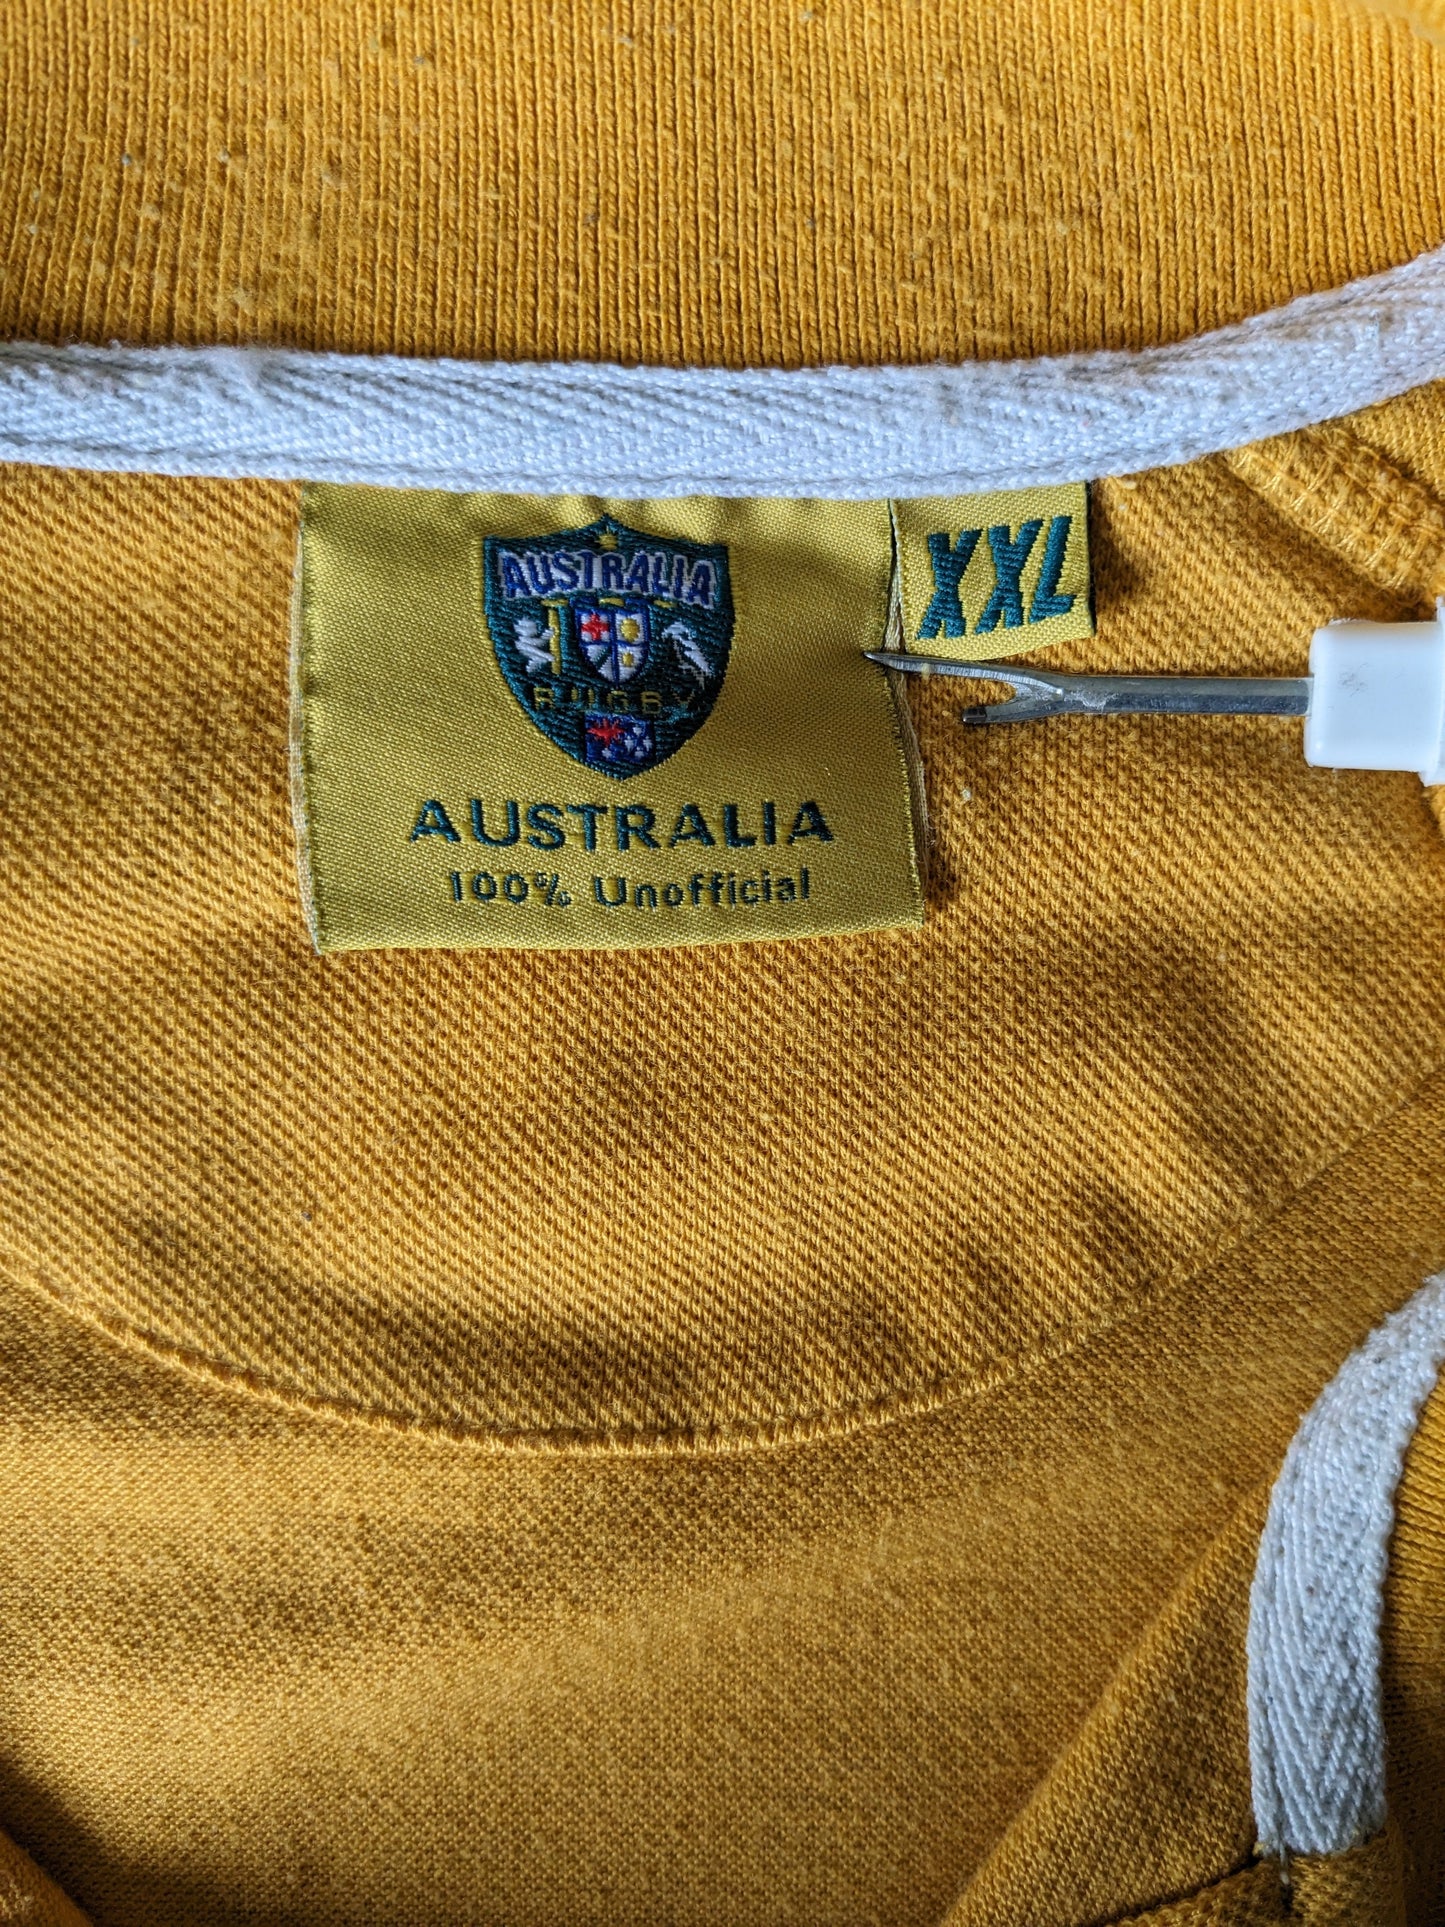 Polo de rugby de Australia Vintage. Color amarillo blanco verde color. Tamaño 2xl / xxl.